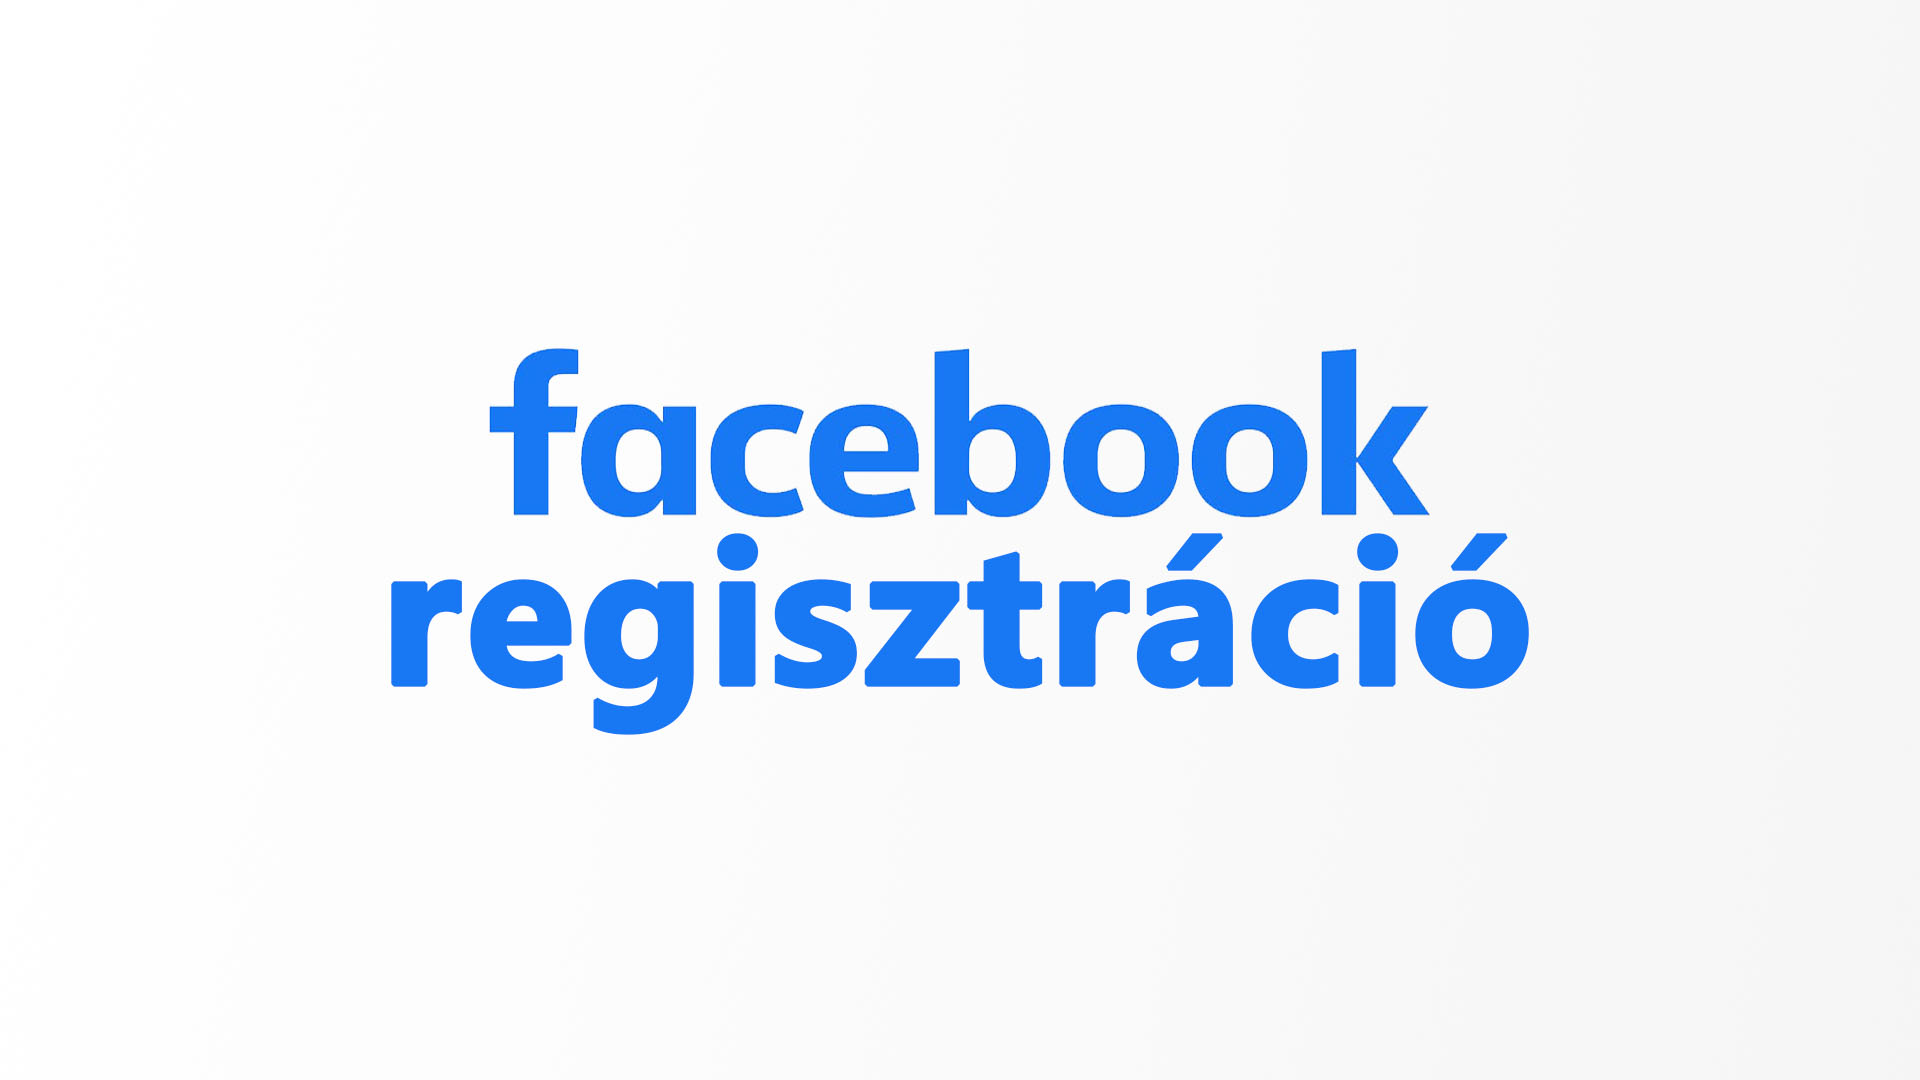 Facebook regisztráció lépései magyarul (Magyar nyelvű regisztrációs útmutató)